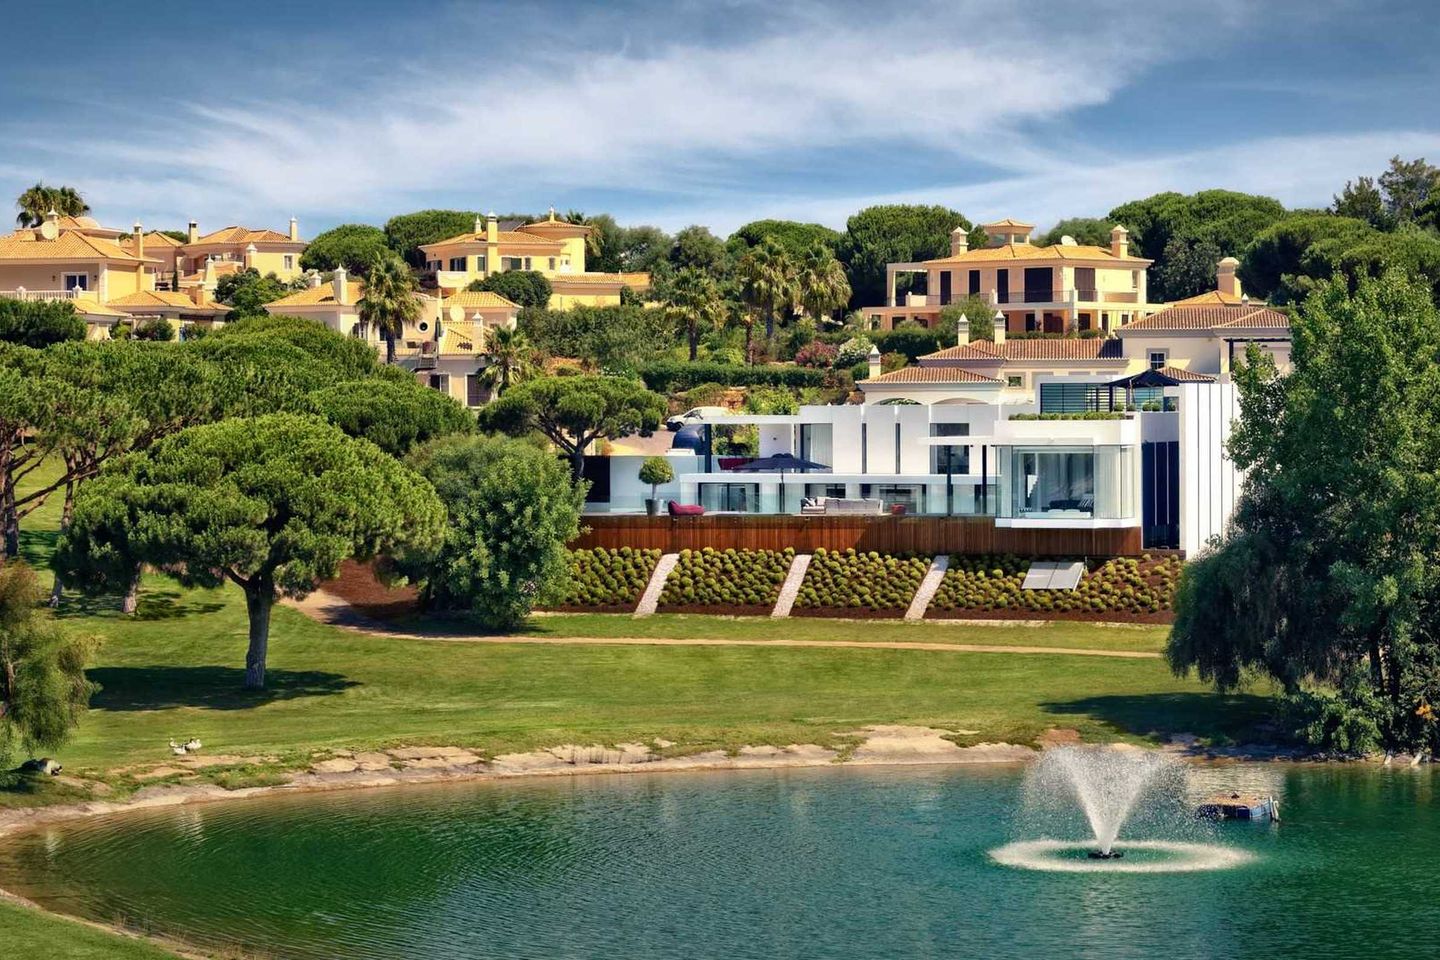 Villa in Vale Do Lobo, Almancil, Algarve, Portugal, Almancil, Algarve, Portugal